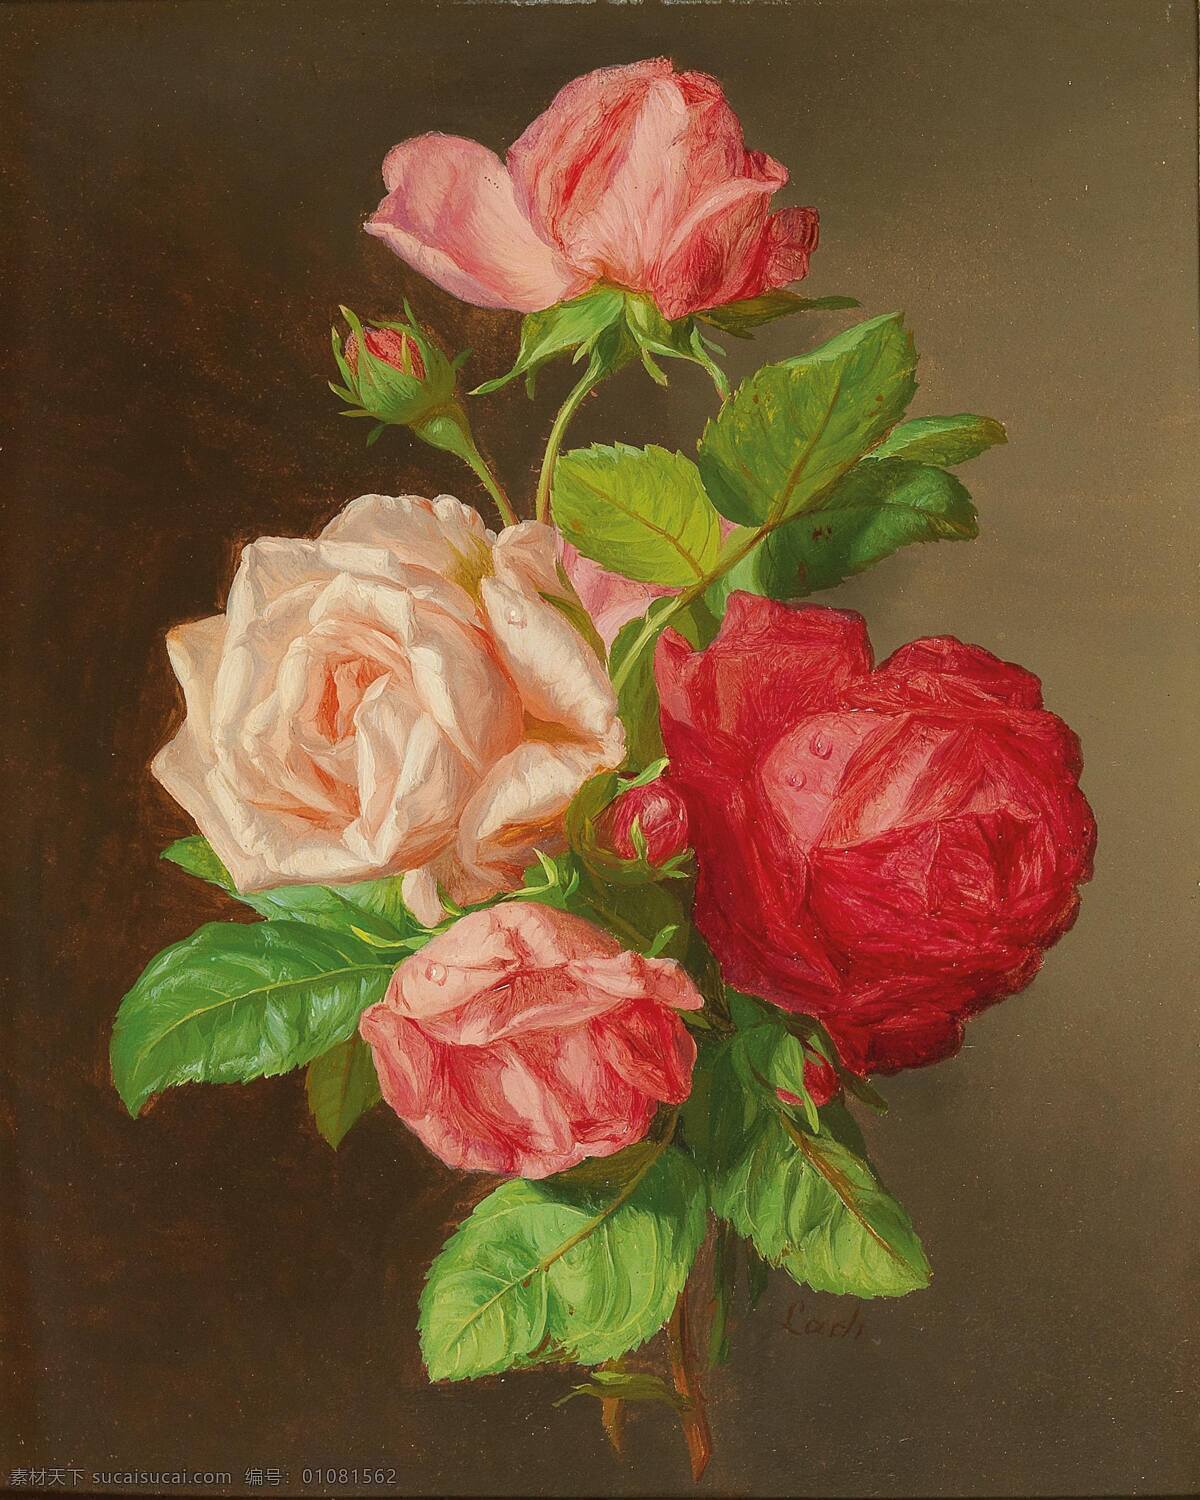 安德烈 亚斯 拉赫 作品 奥地利画家 玫瑰 静物花卉 永恒之美 19世纪油画 油画 文化艺术 绘画书法